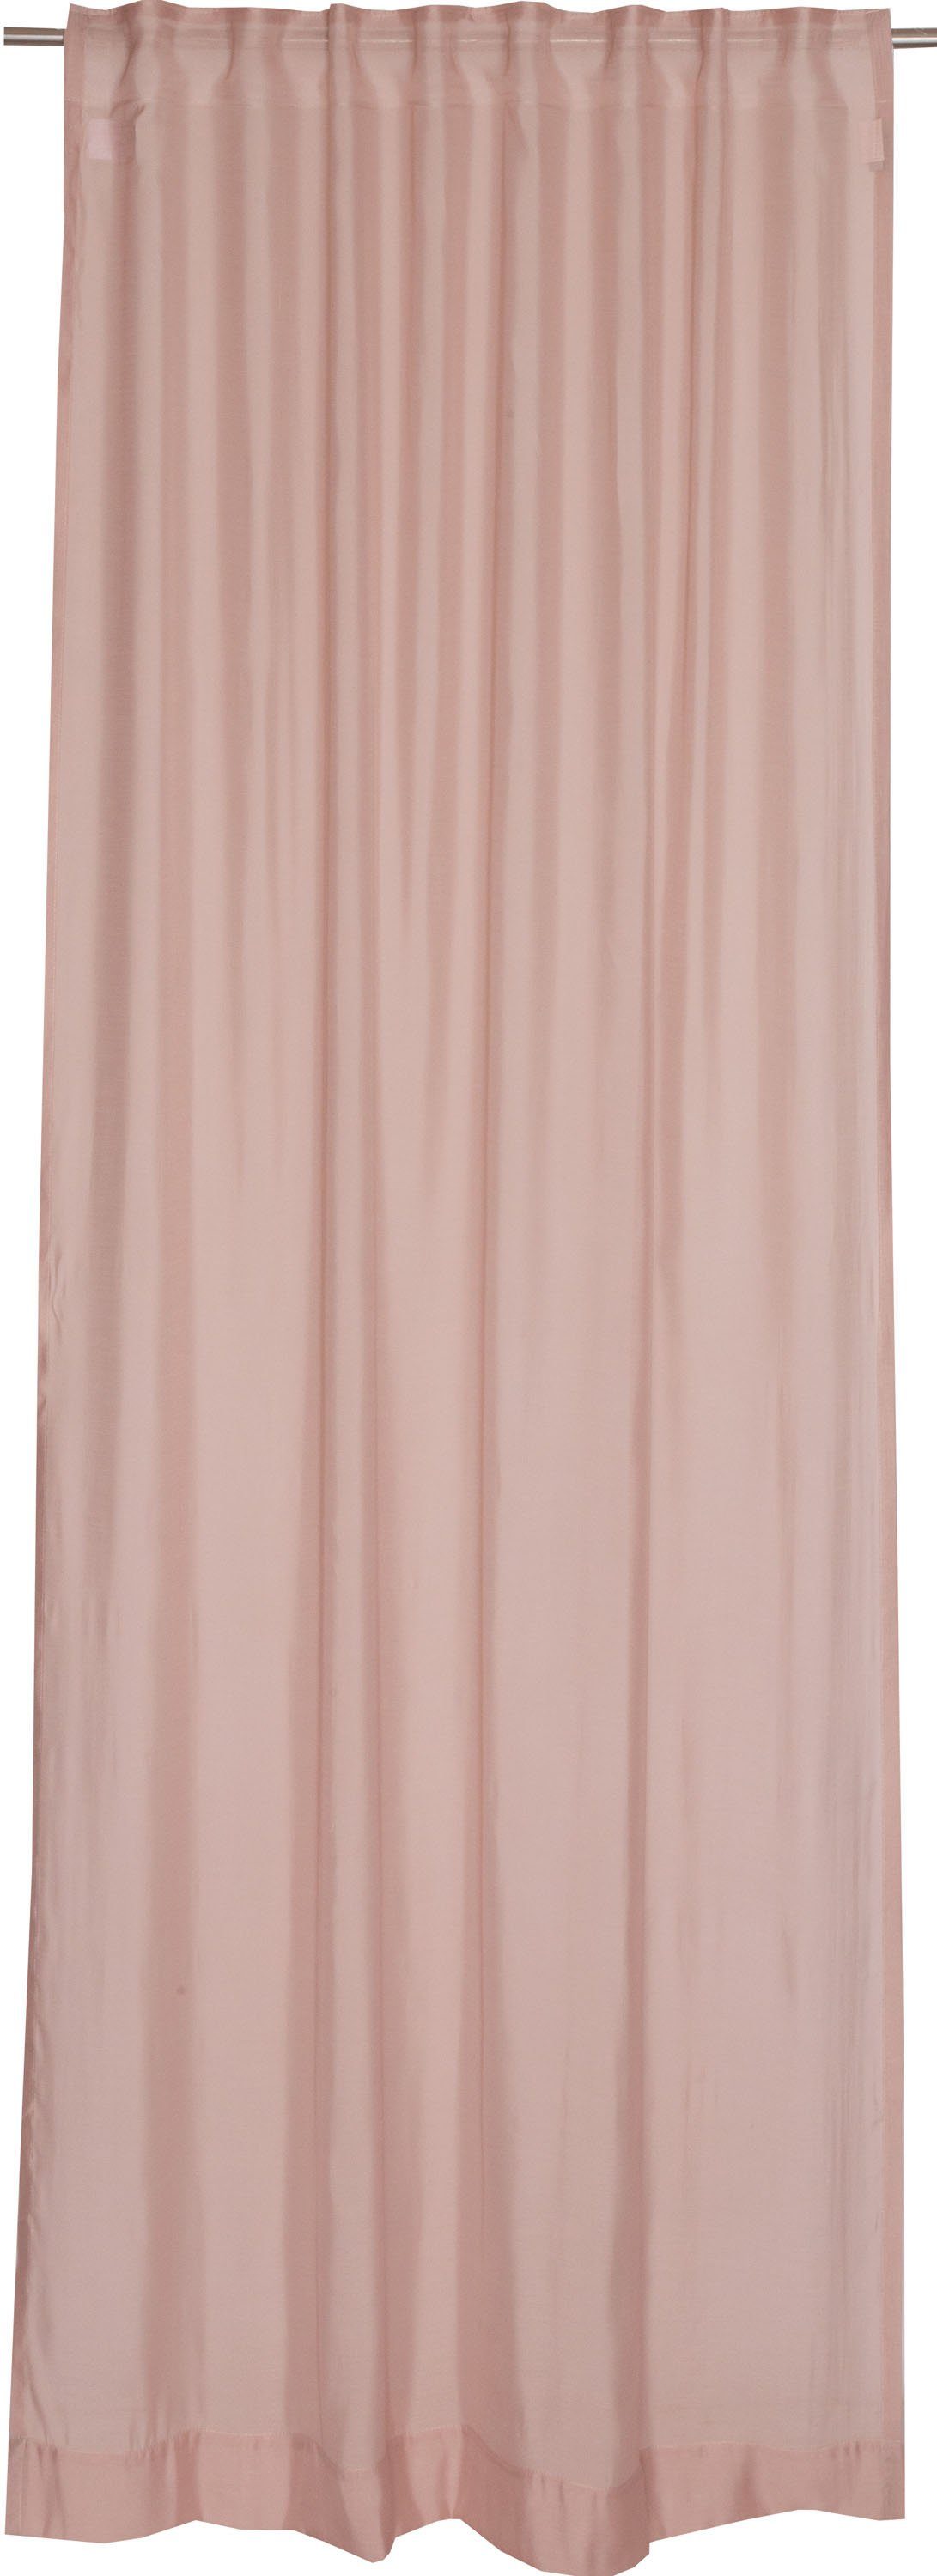 Vorhang Solid, SCHÖNER WOHNEN-Kollektion, Multifunktionsband (1 St), halbtransparent, Jacquard, im zeilosen, unifarbenen Look rosa/rosé